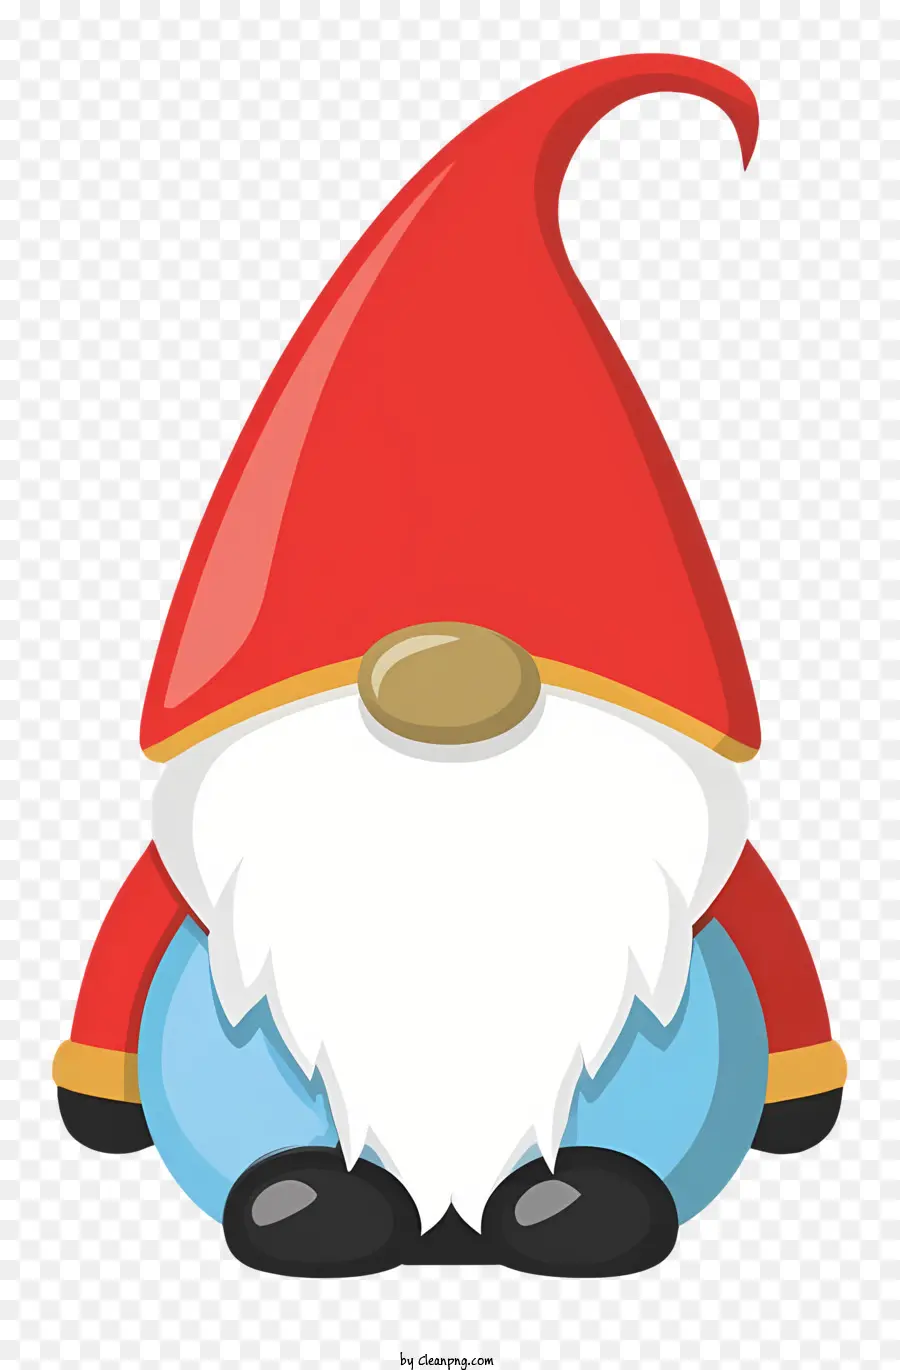 gnome nhân vật râu đỏ quần xanh áo sơ mi trắng mũ - Anime gnome nhân vật với bộ râu đỏ và quần áo màu xanh